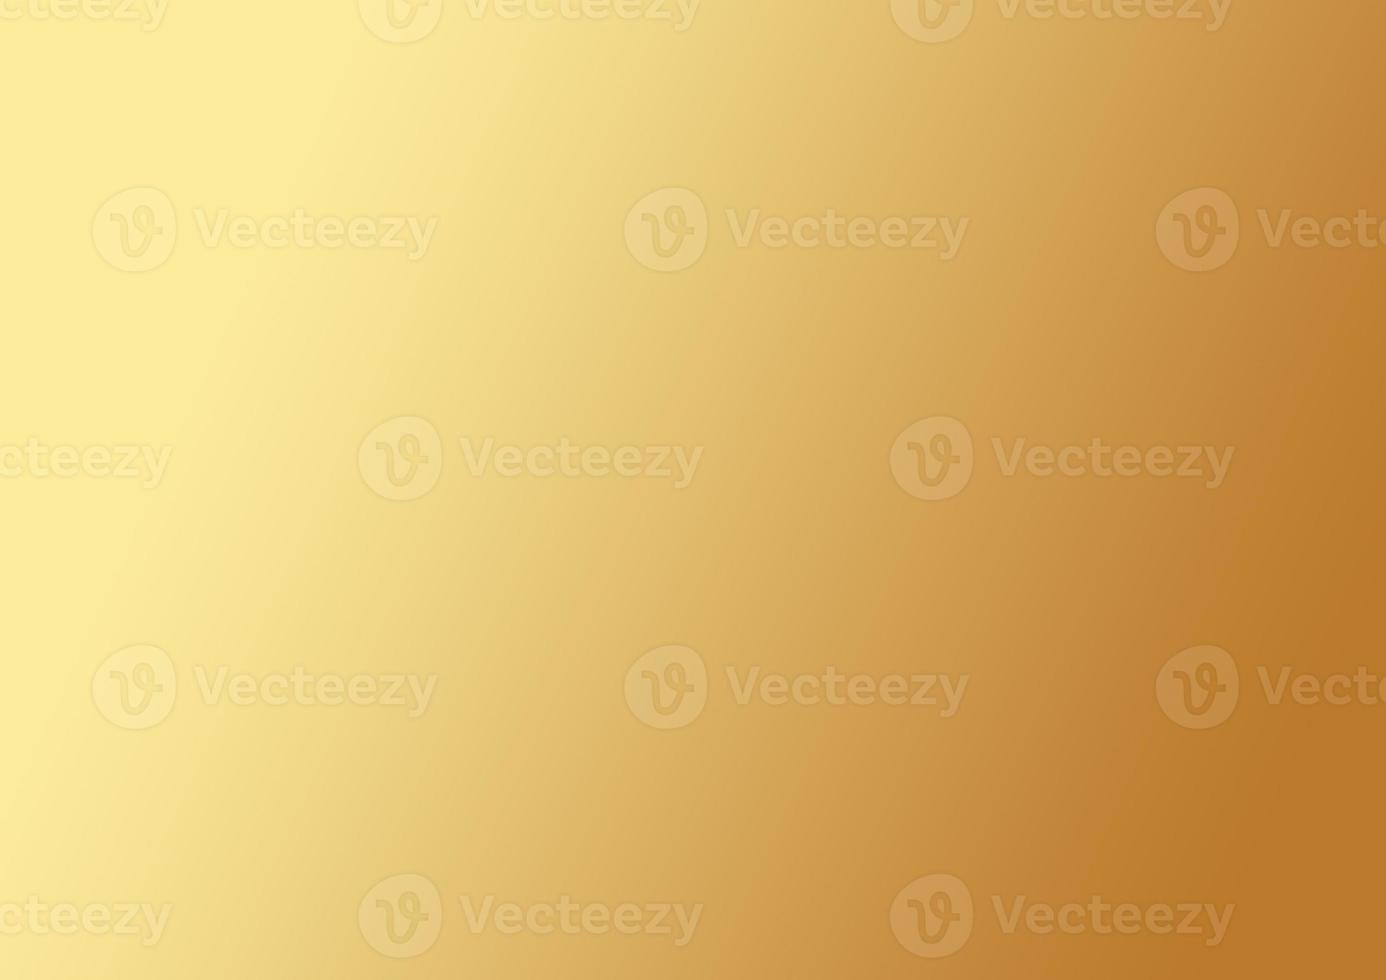 mur d'or abstrait fond jaune couleur diffuse sur dégradé d'or avec une conception de texture de fond rougeoyante douce ton cool pour le web, les applications mobiles, les couvertures, la carte, l'infographie, les bannières, noël photo